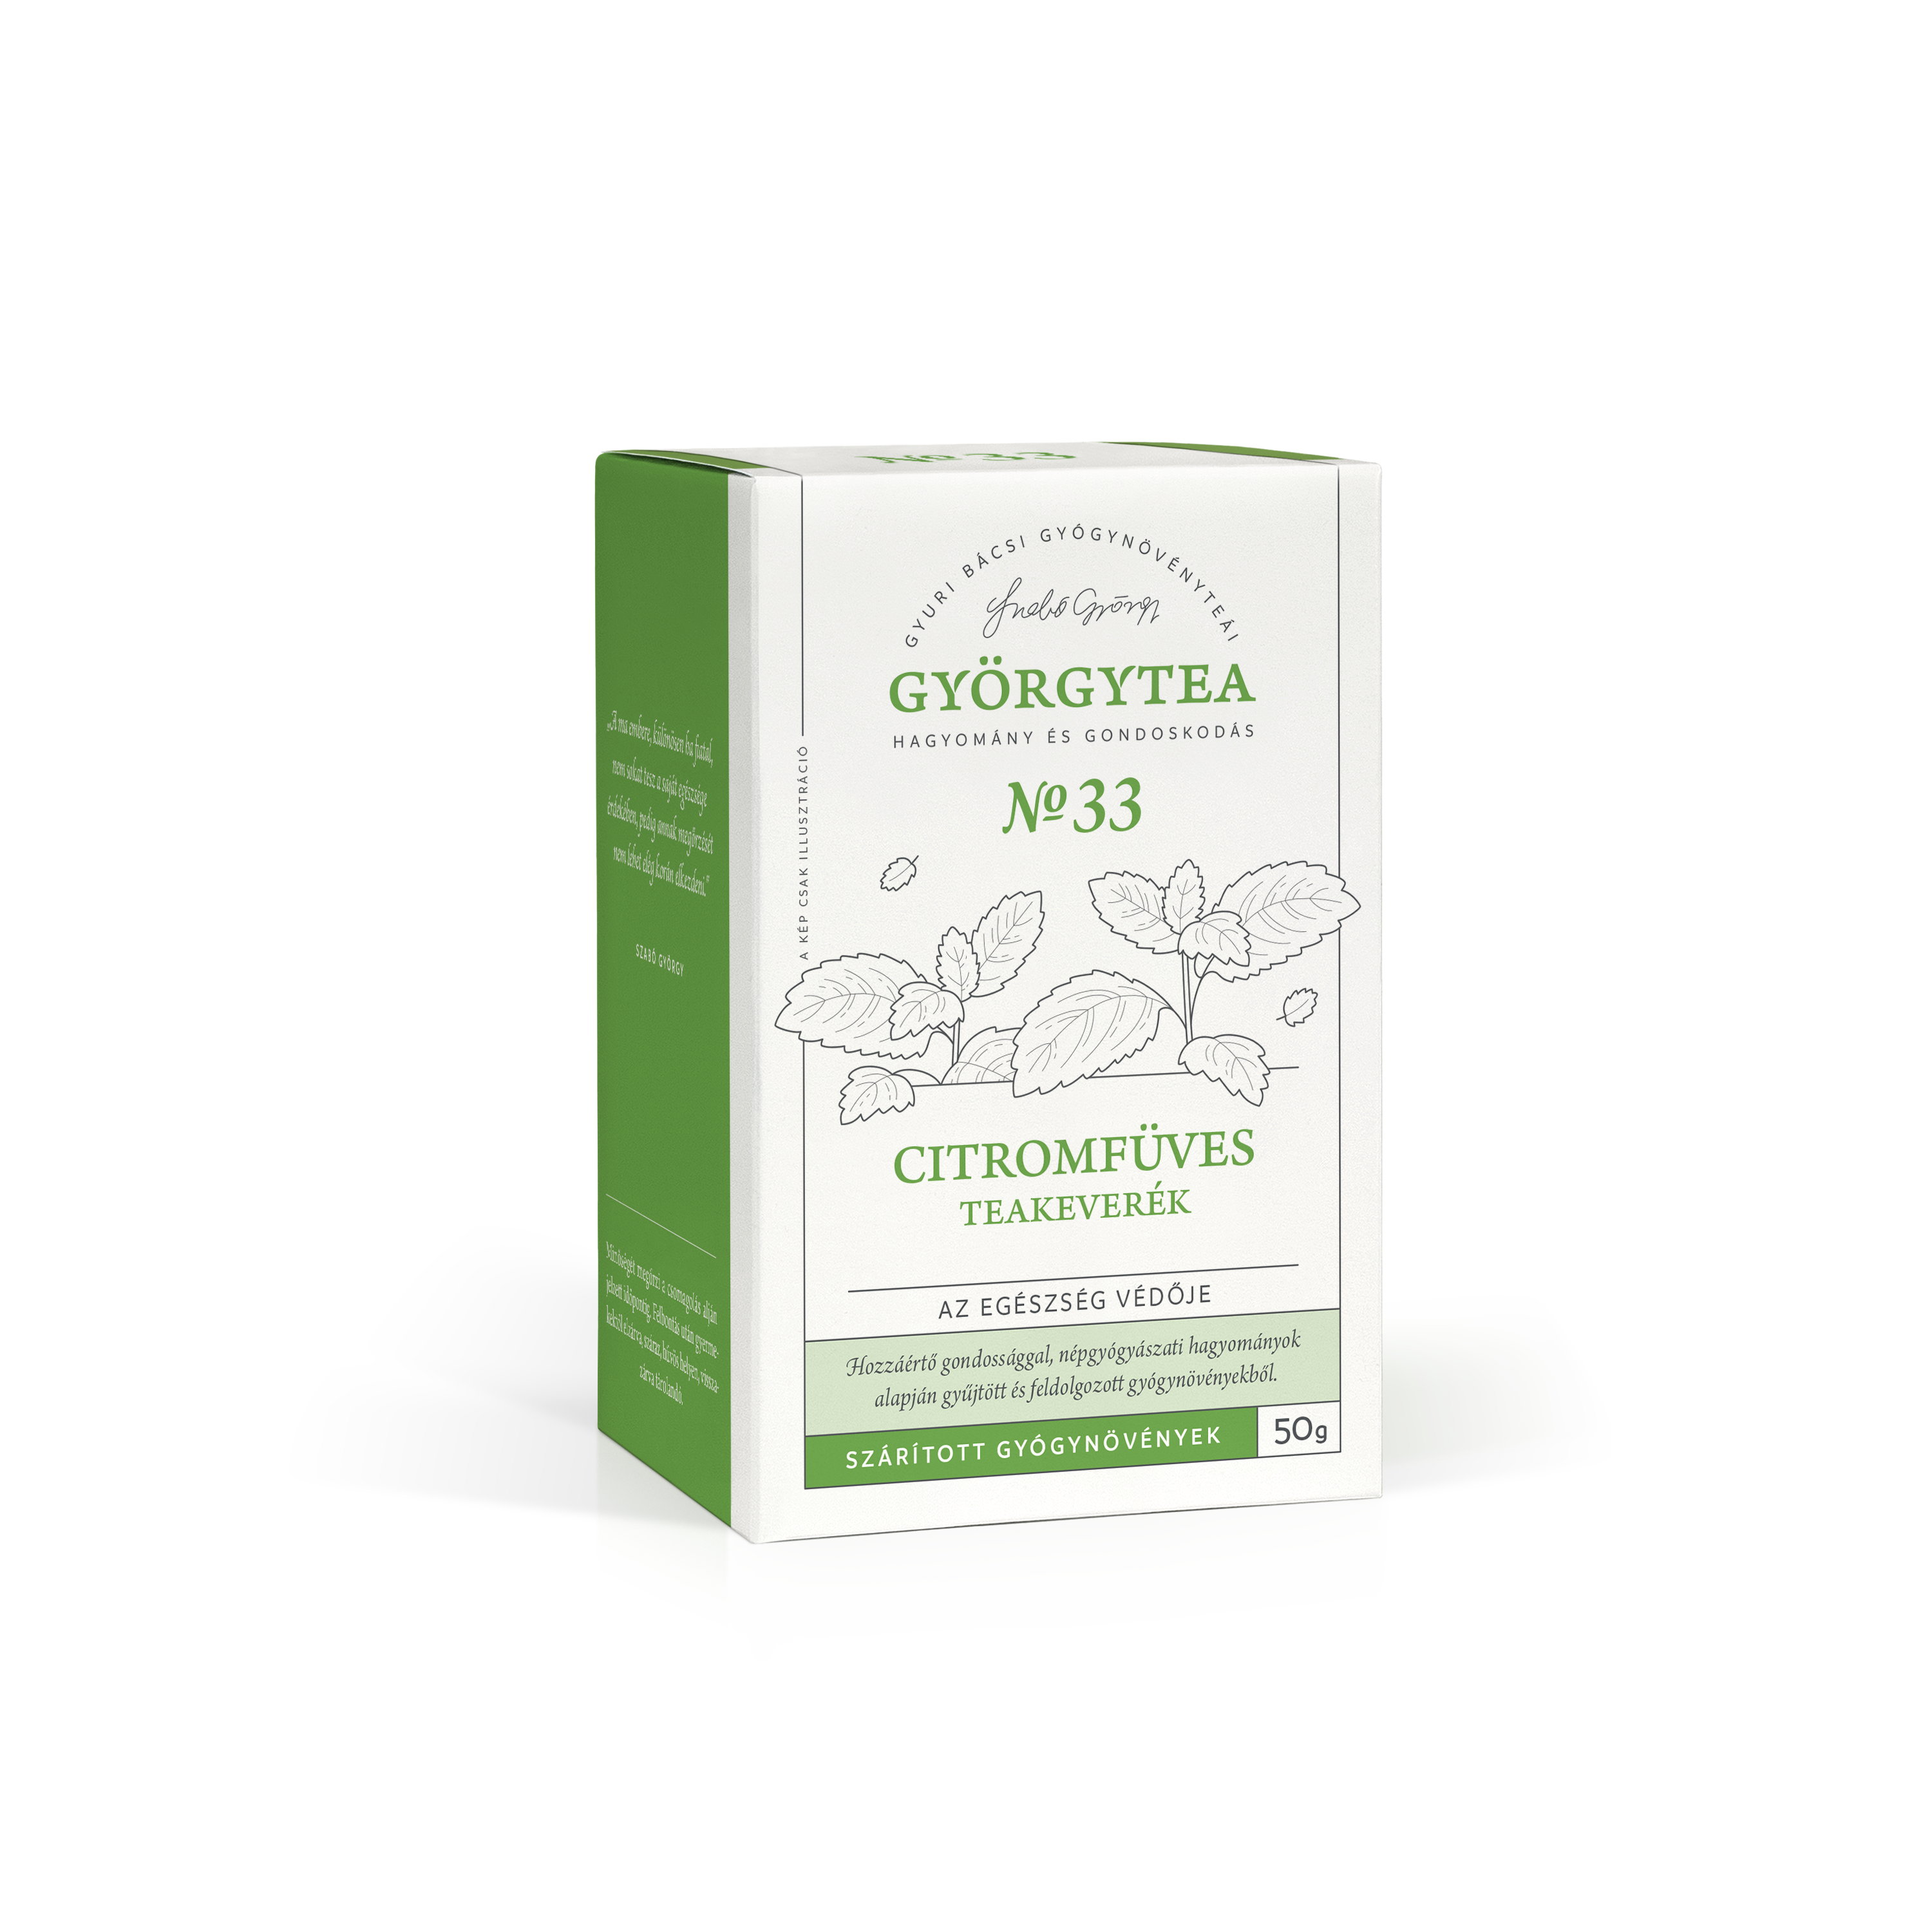 Citromfüves teakeverék (Az egészség védője)